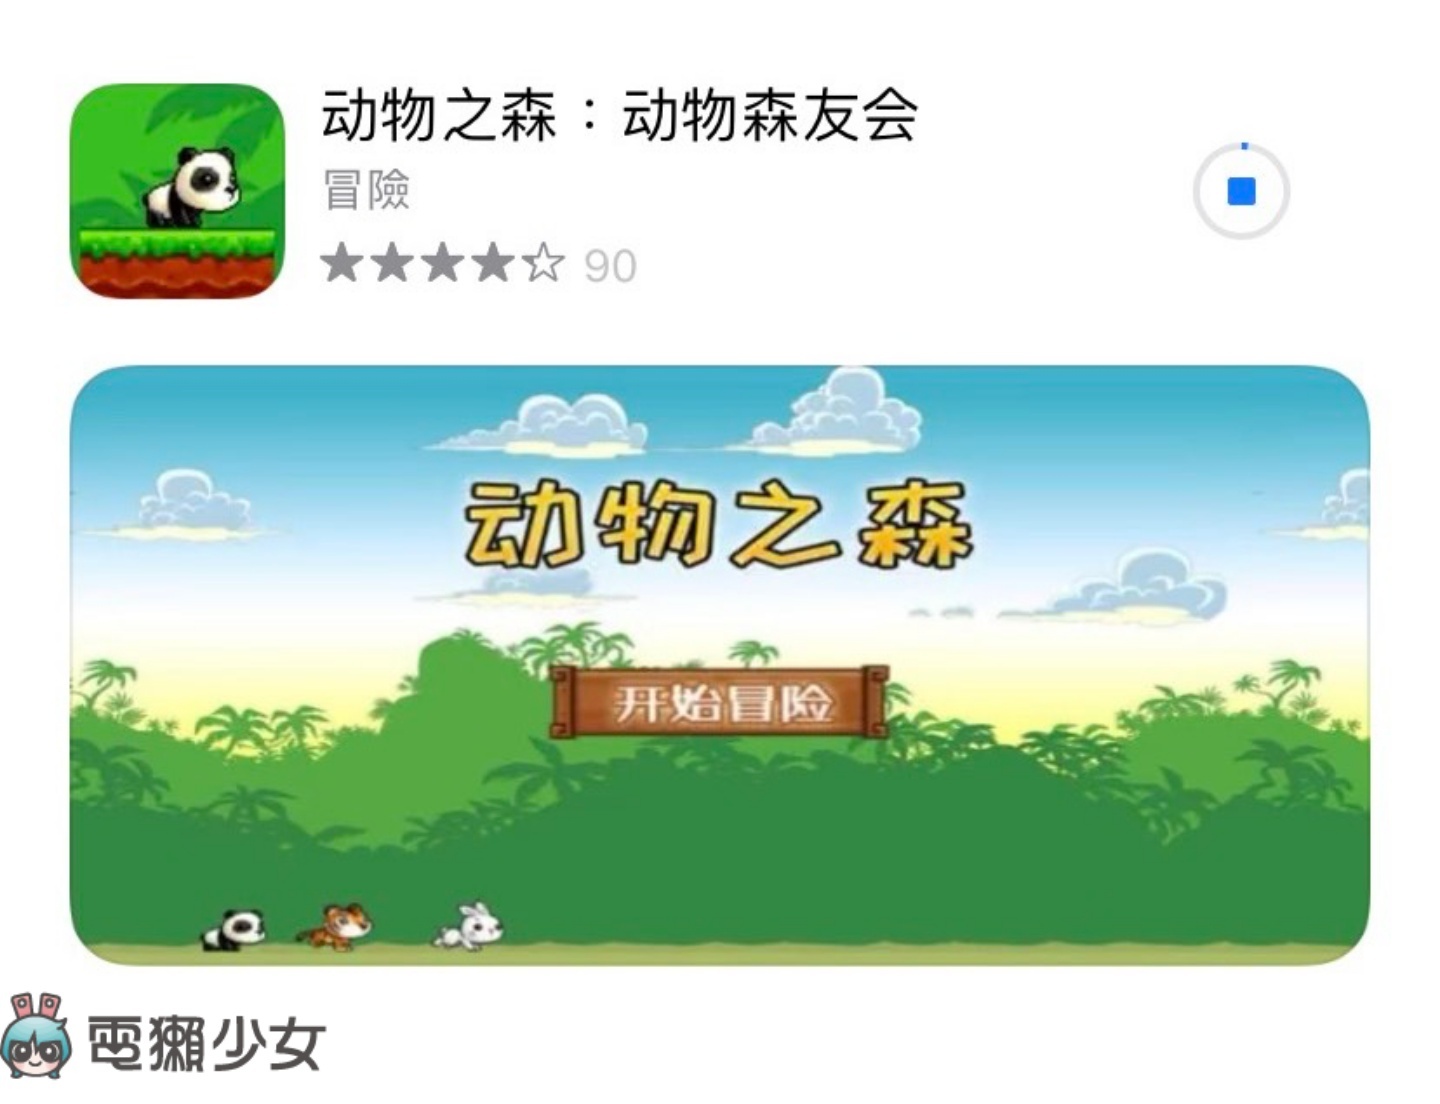 噴飯！盜版『 動物之森 』手遊在 App Store 開放下載 寵物造型還抄這款遊戲